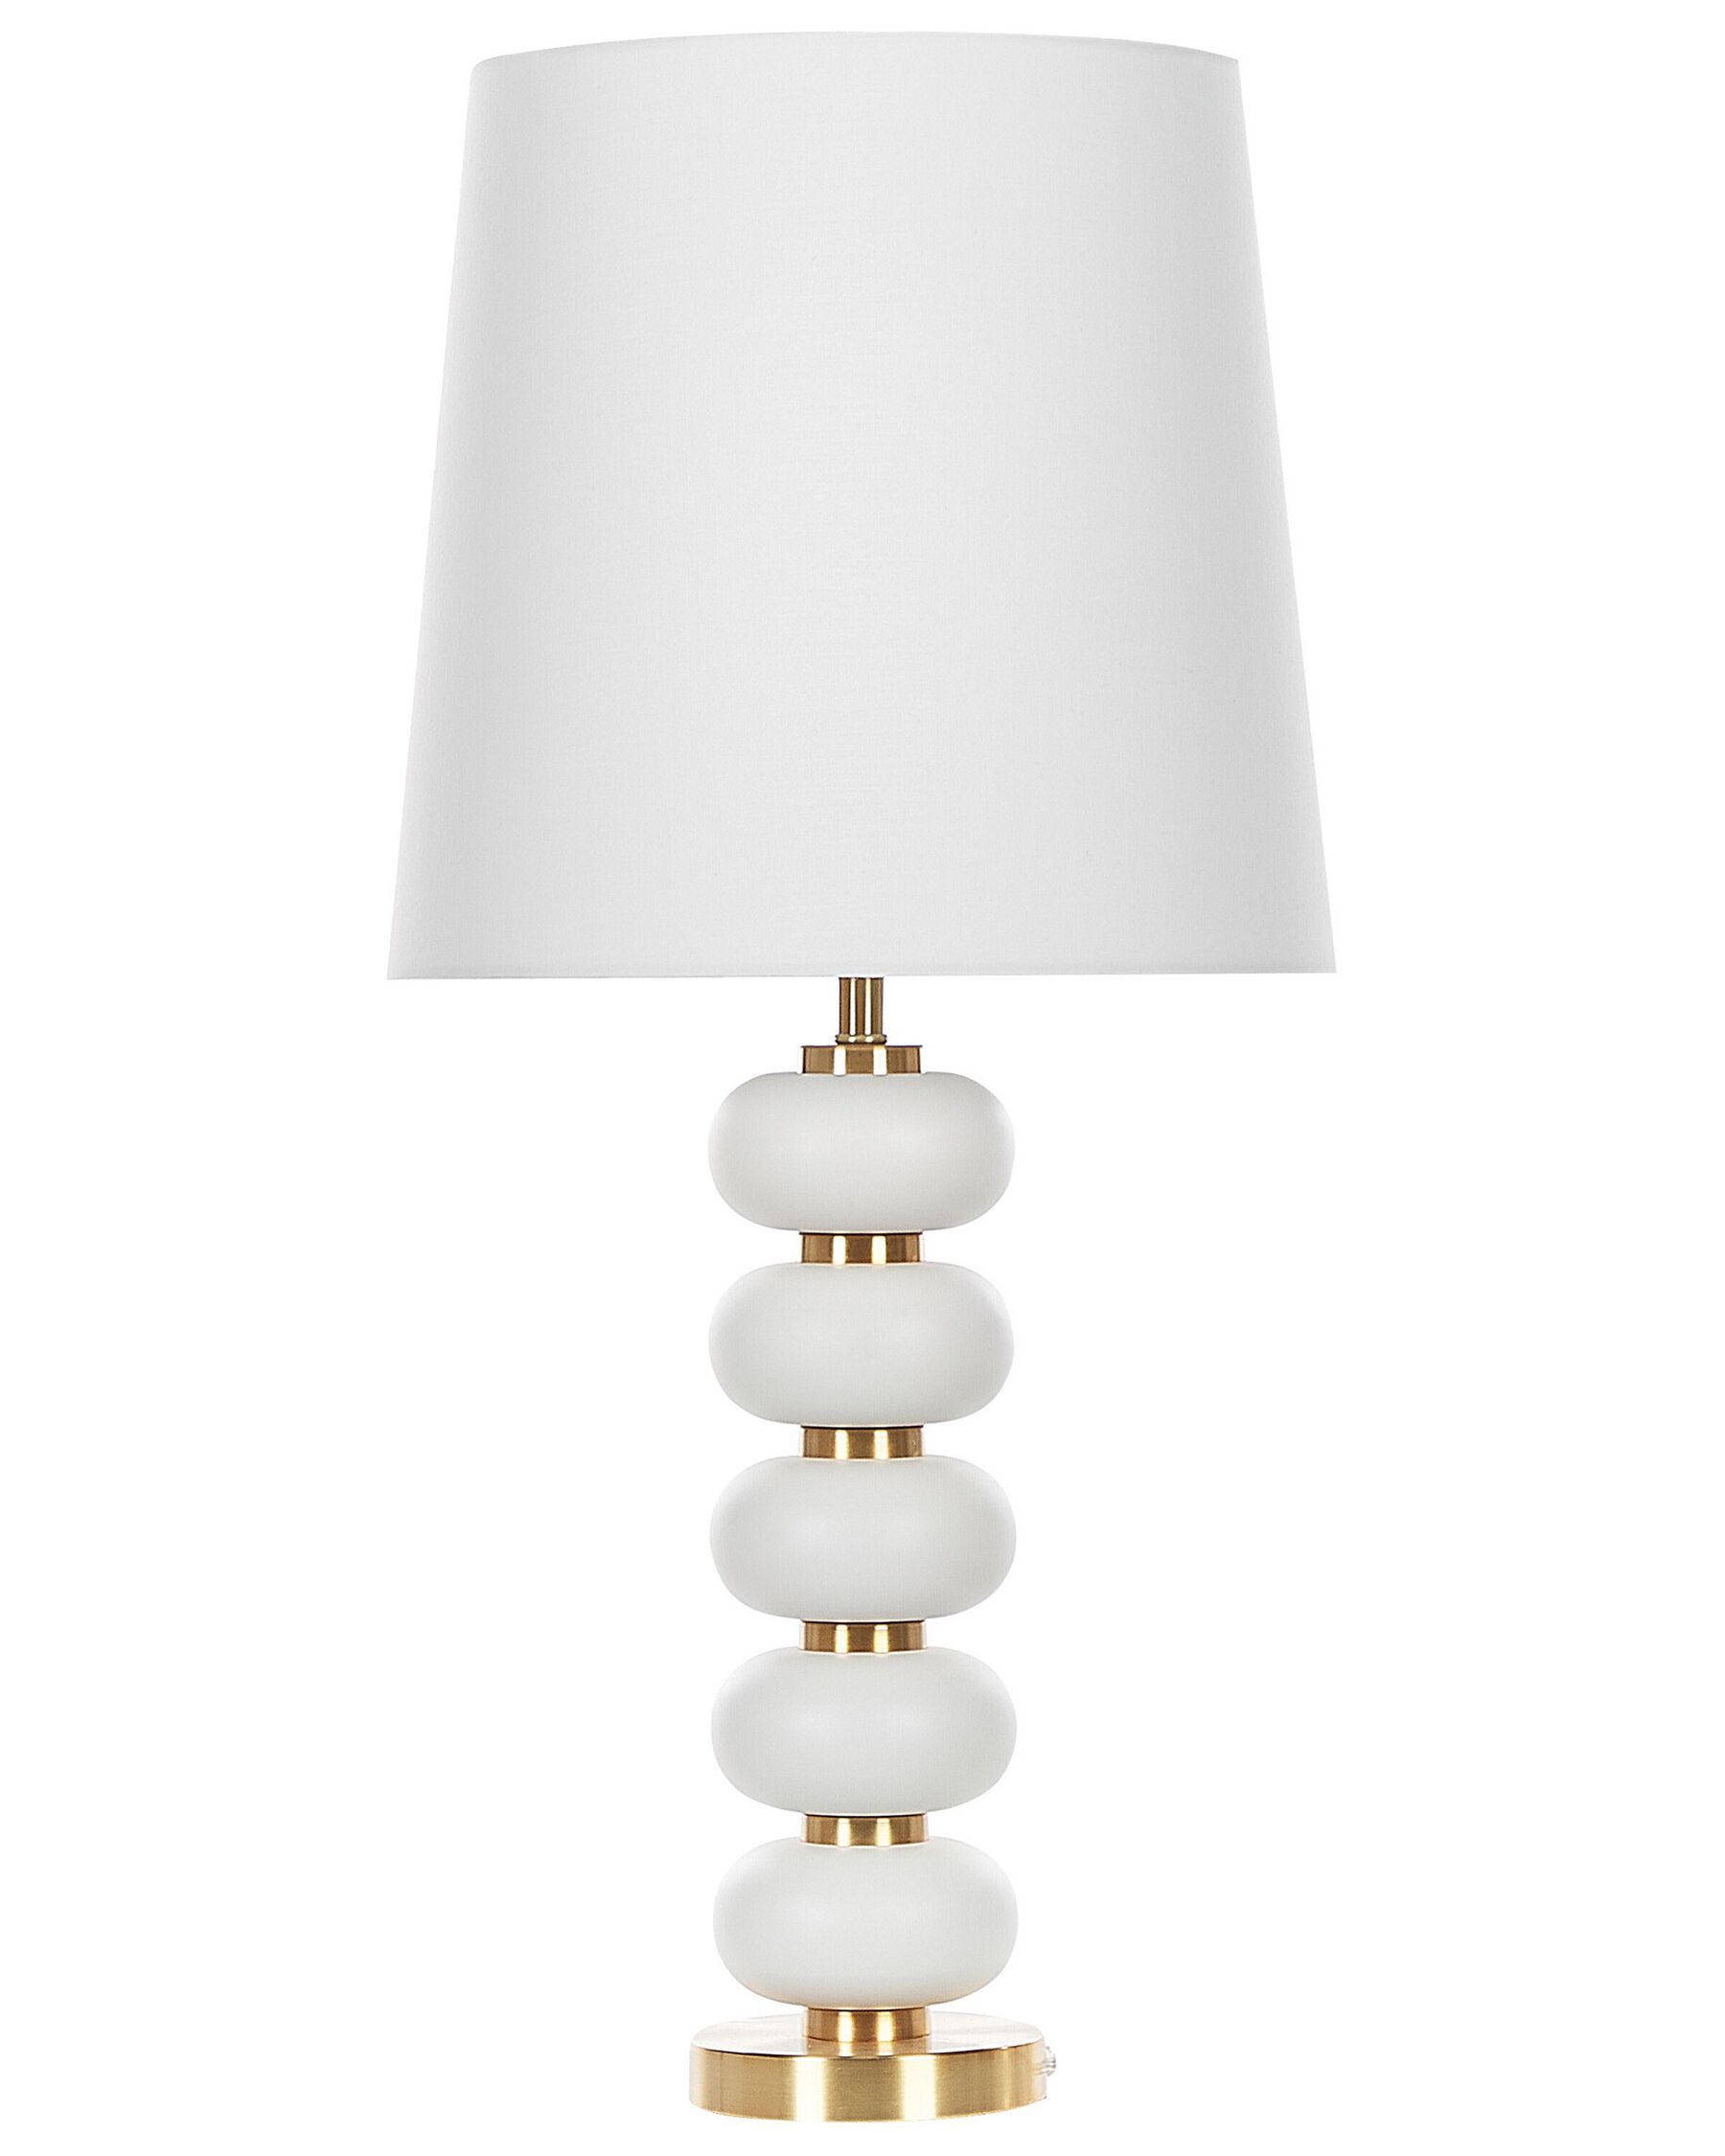 Tischlampe weiß / gold 80 cm Trommelform FRIO_823026